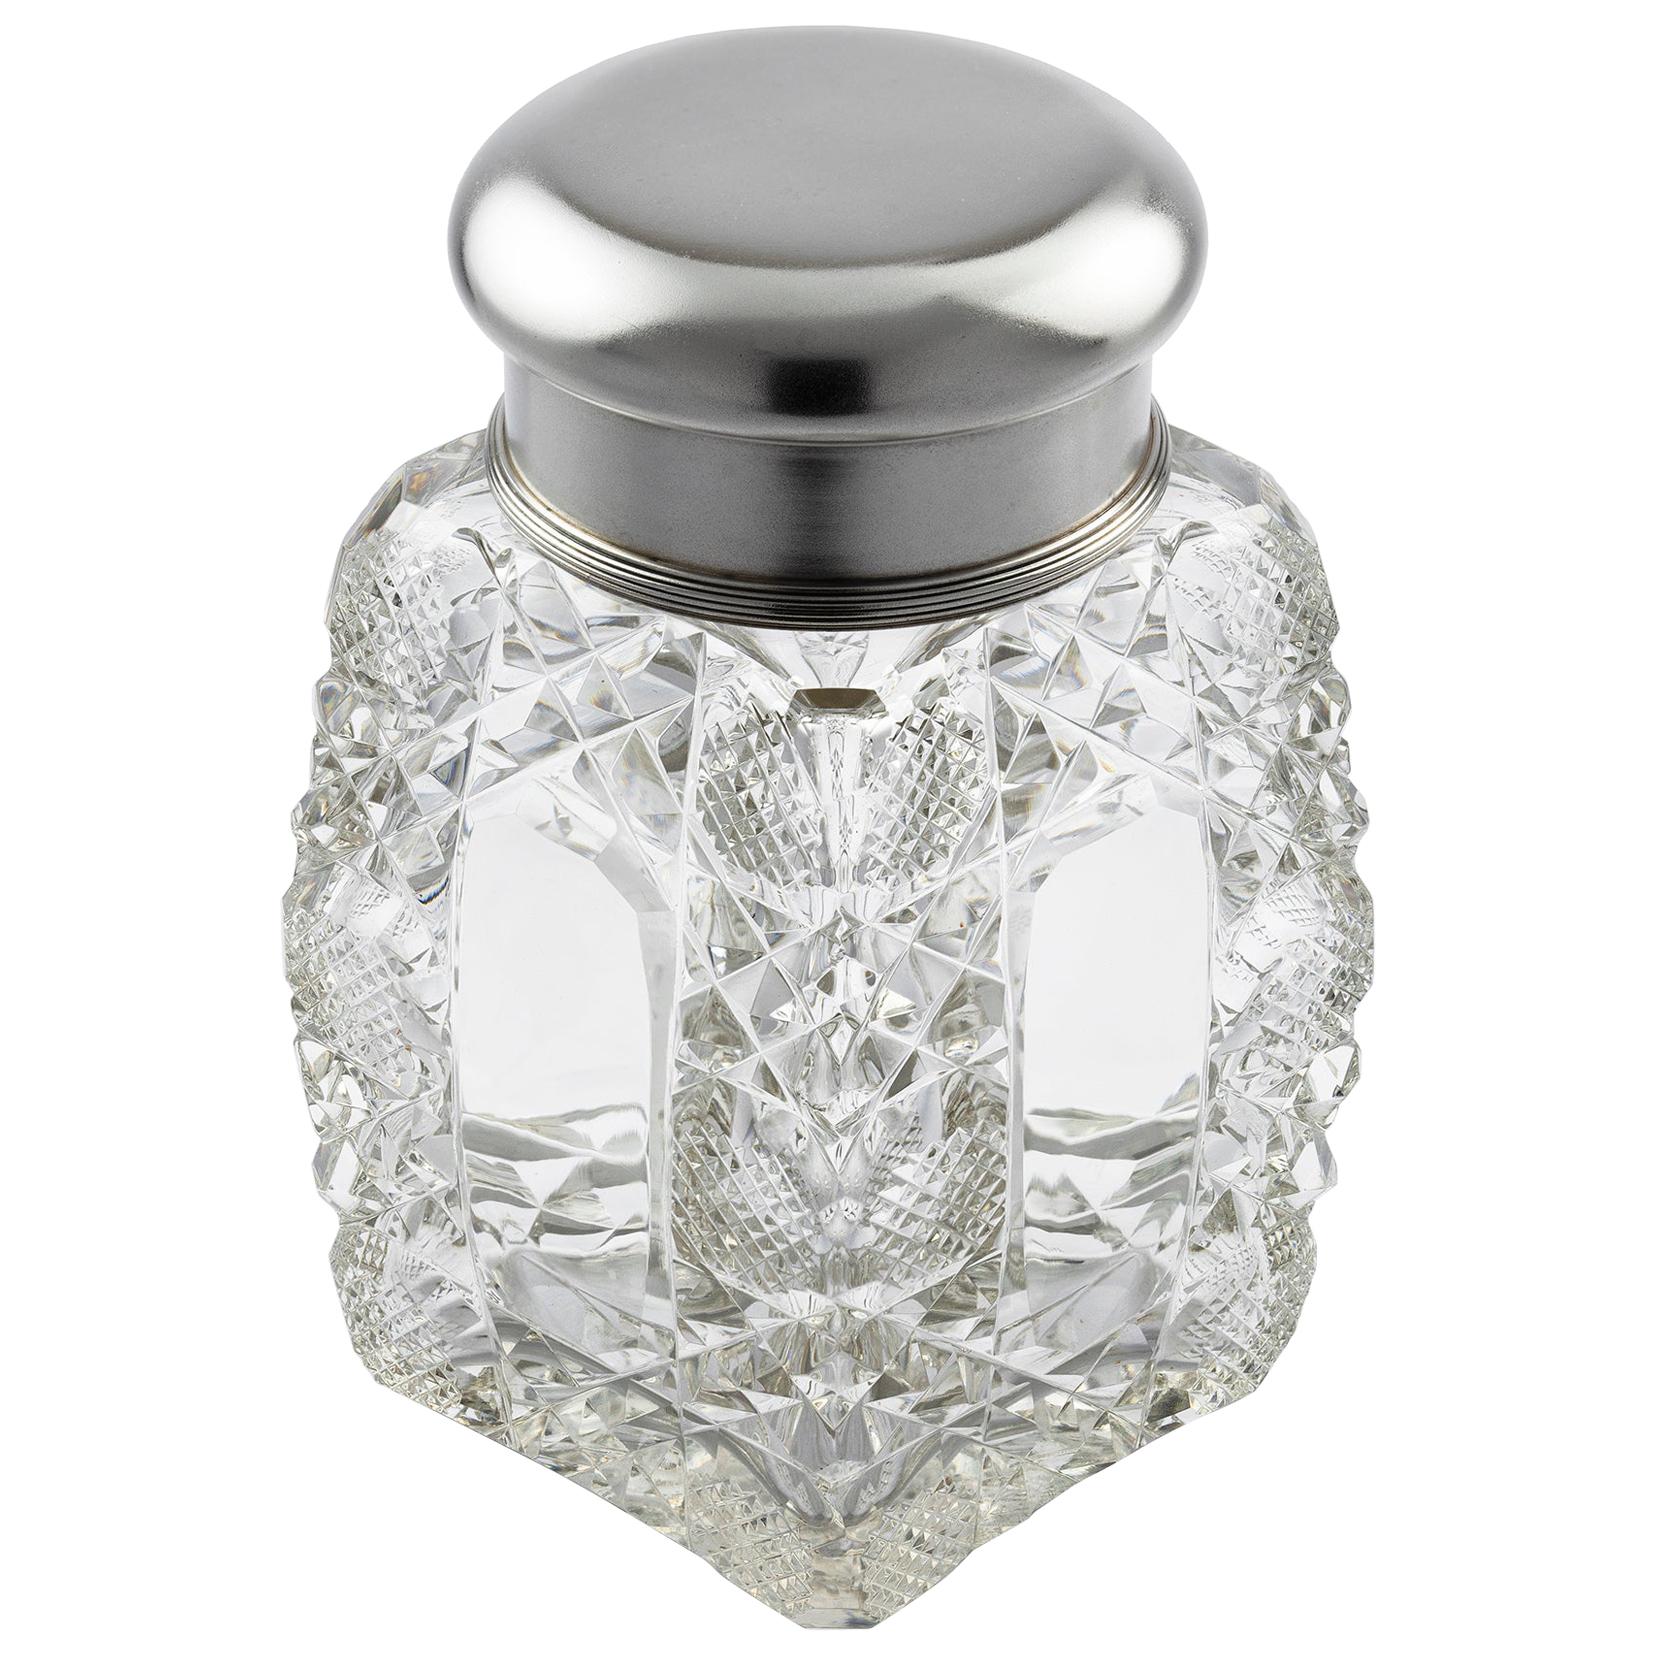 Glasflasche von Fabergé mit silbernem Deckel